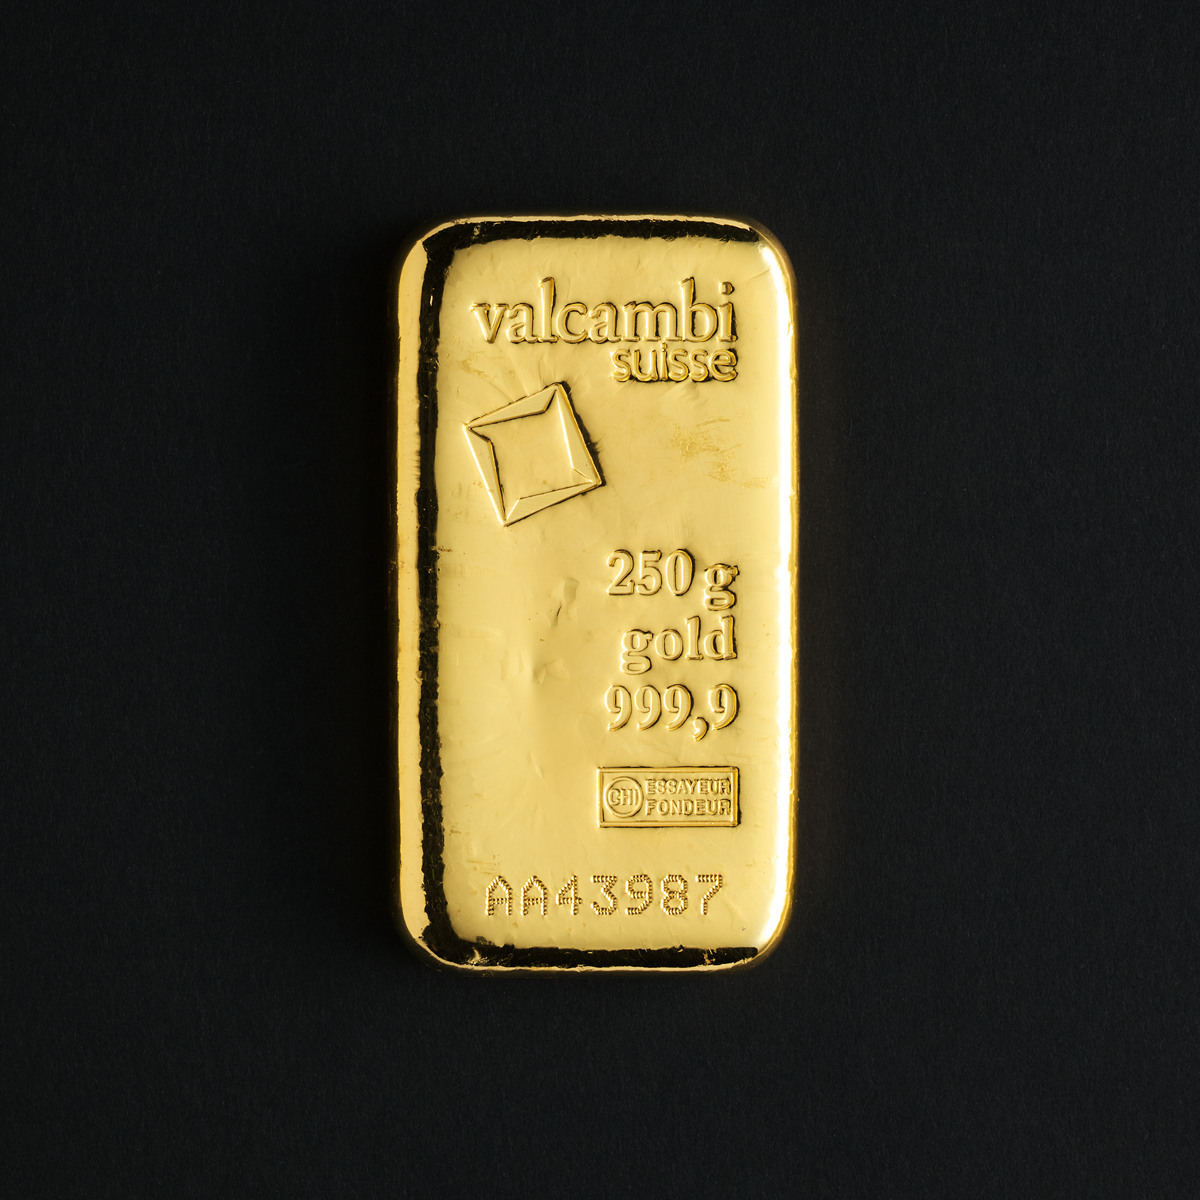 250 gram Suisse guldbarre | Tavex Danmark